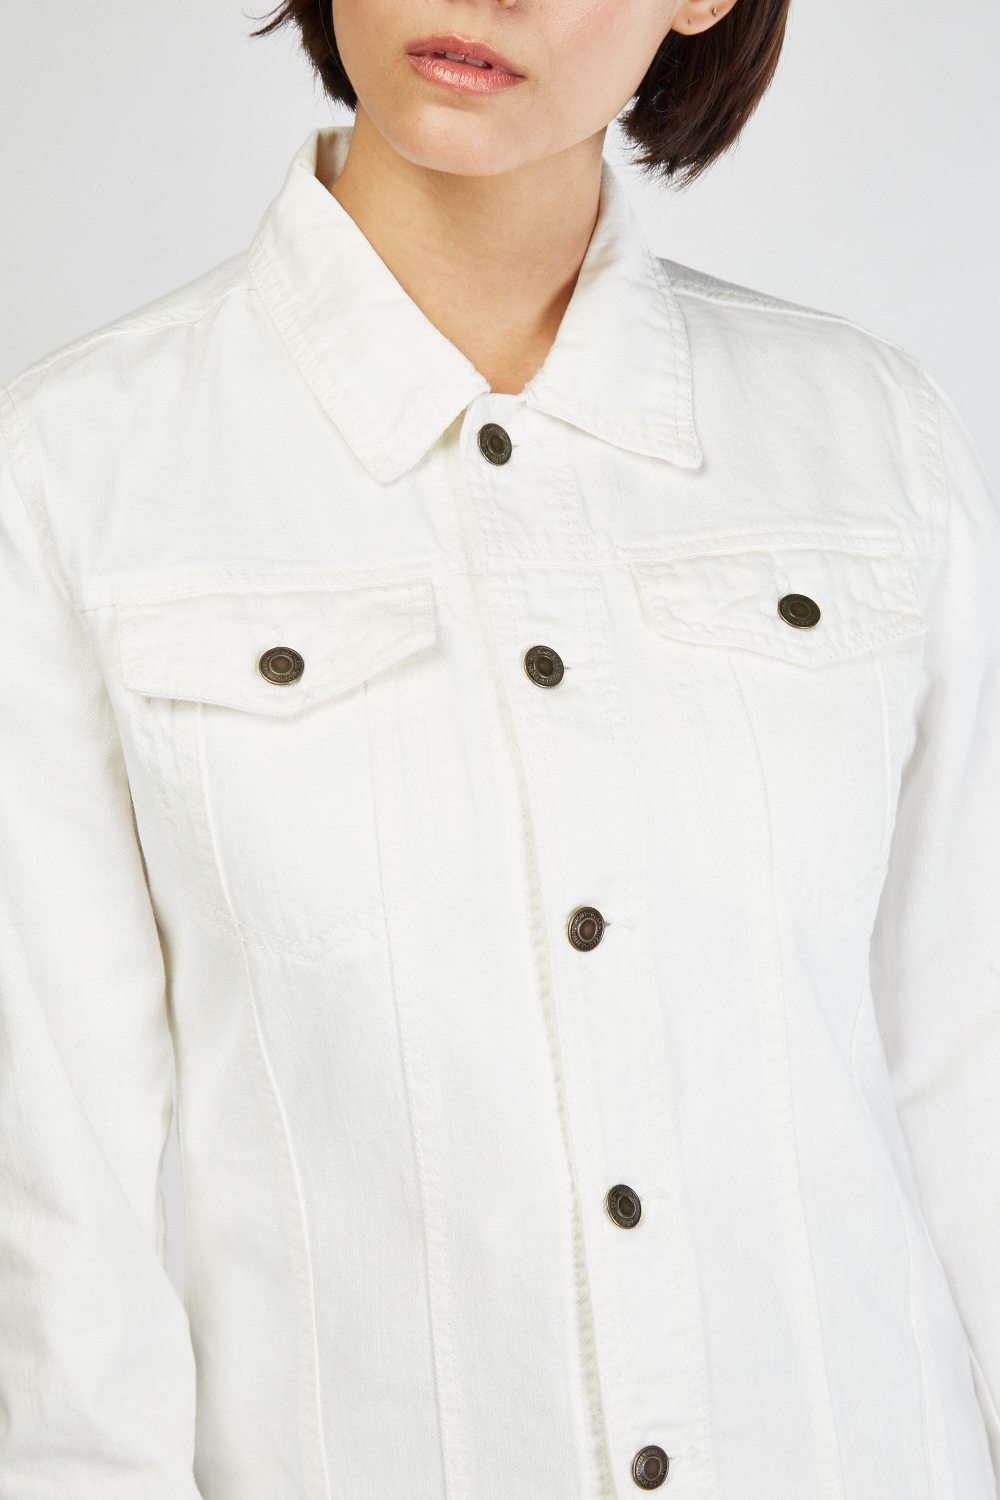 Long Sleeve White Denim Jacket - Just $7